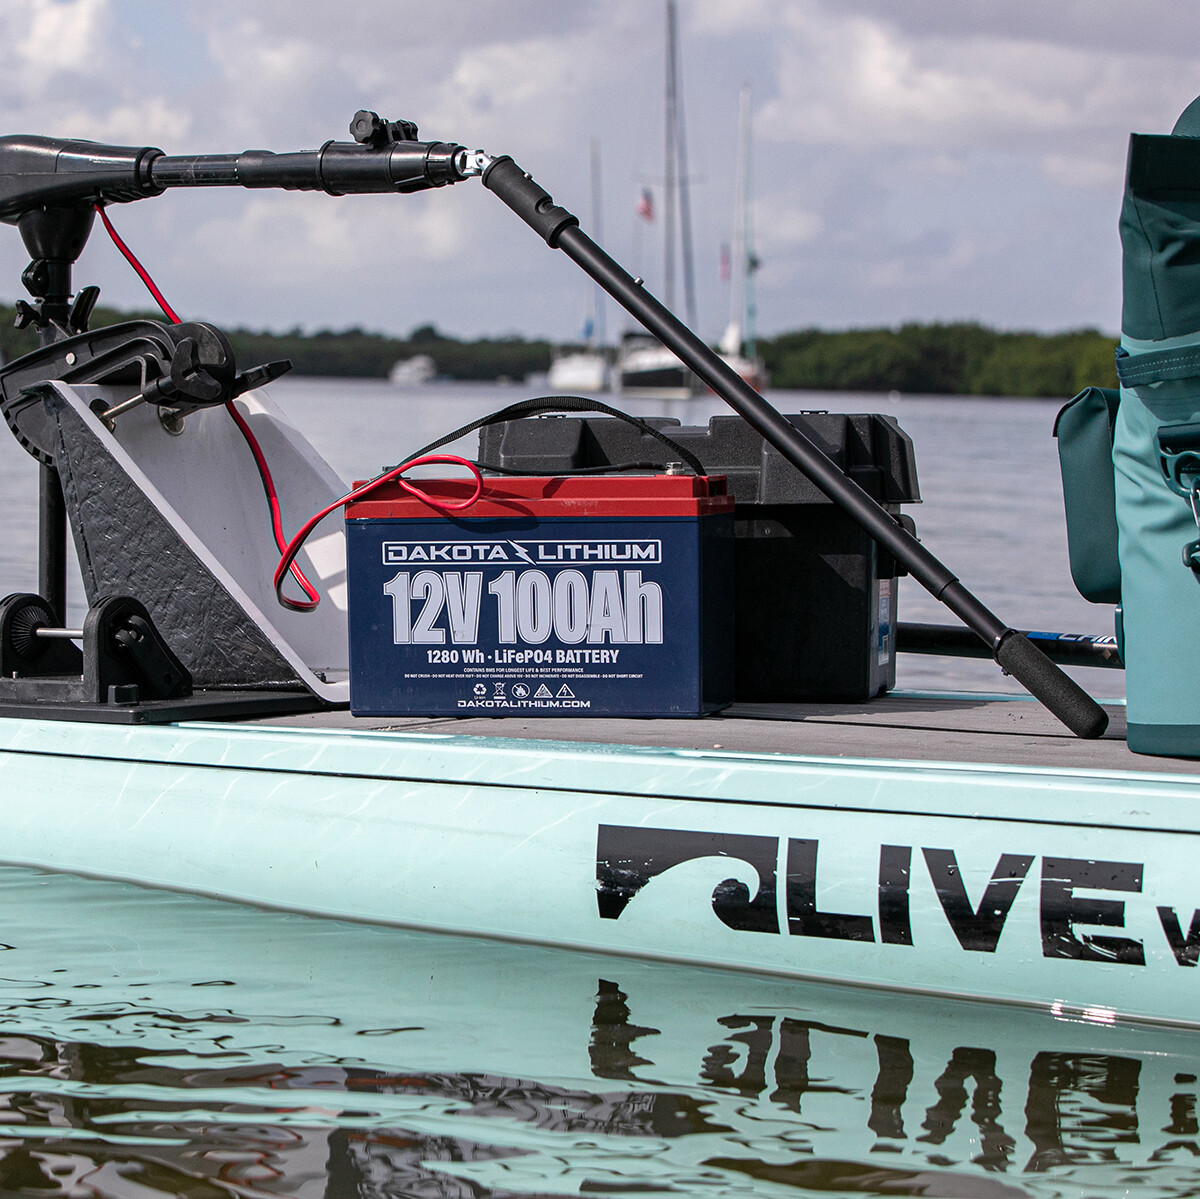 Dakota Lithium makes the best marine battery for kayaks